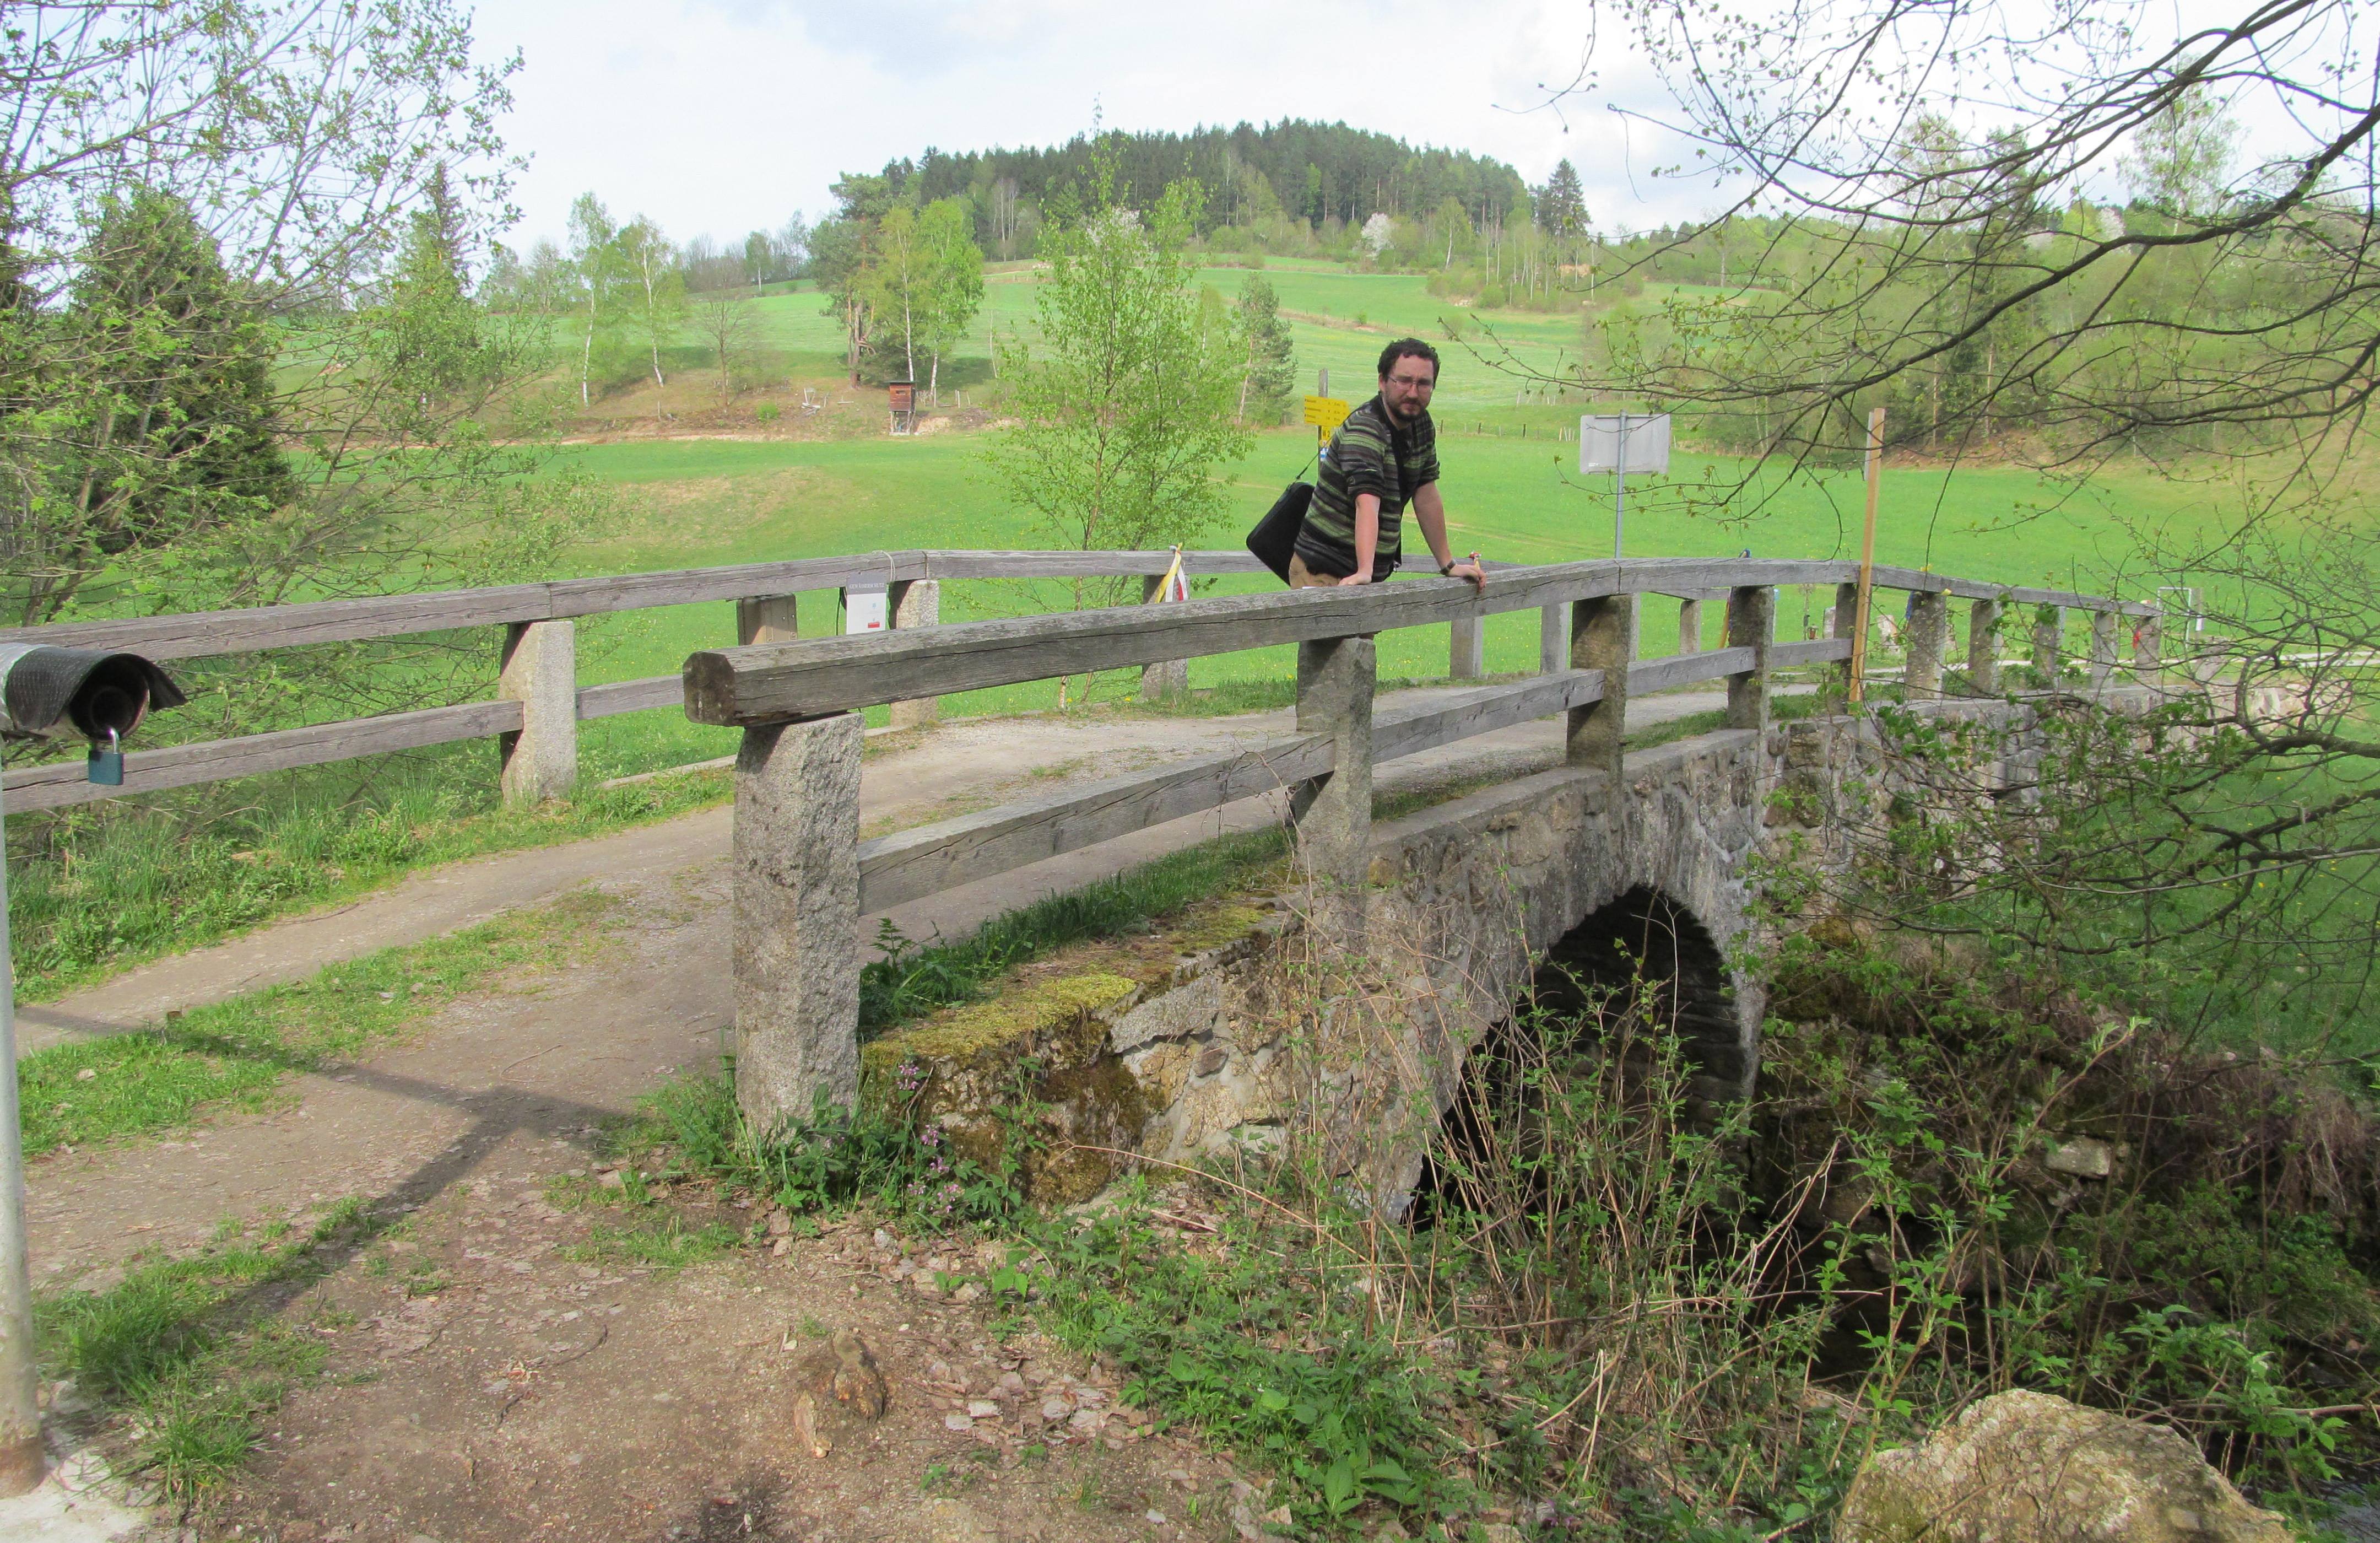 Hraniční kamenný mostek nedaleko Cetvin, pod ním řeka Malše. Na jední straně Česká republika, na druhé Rakousko